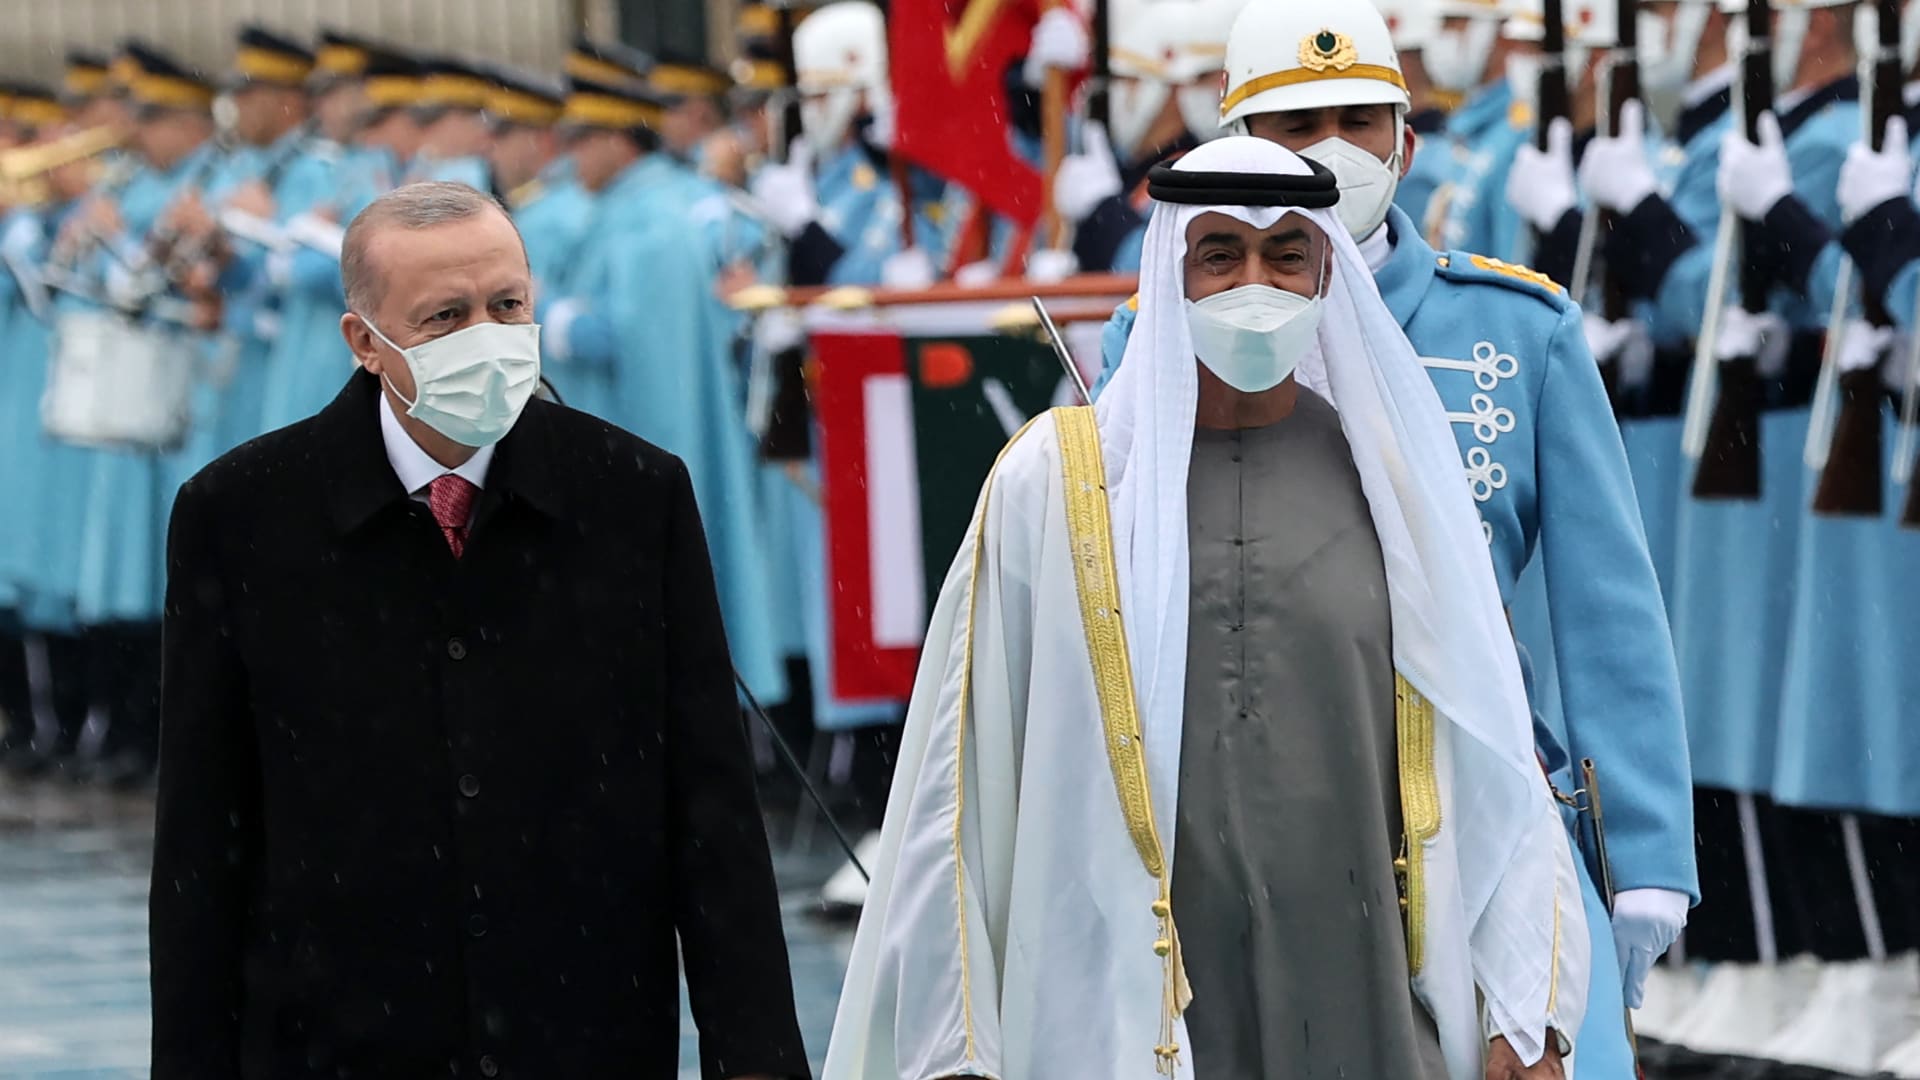 محمد بن زايد يتصل بأردوغان بعد إصابته بكورونا.. والرئيس التركي: "أشكر لطفه"